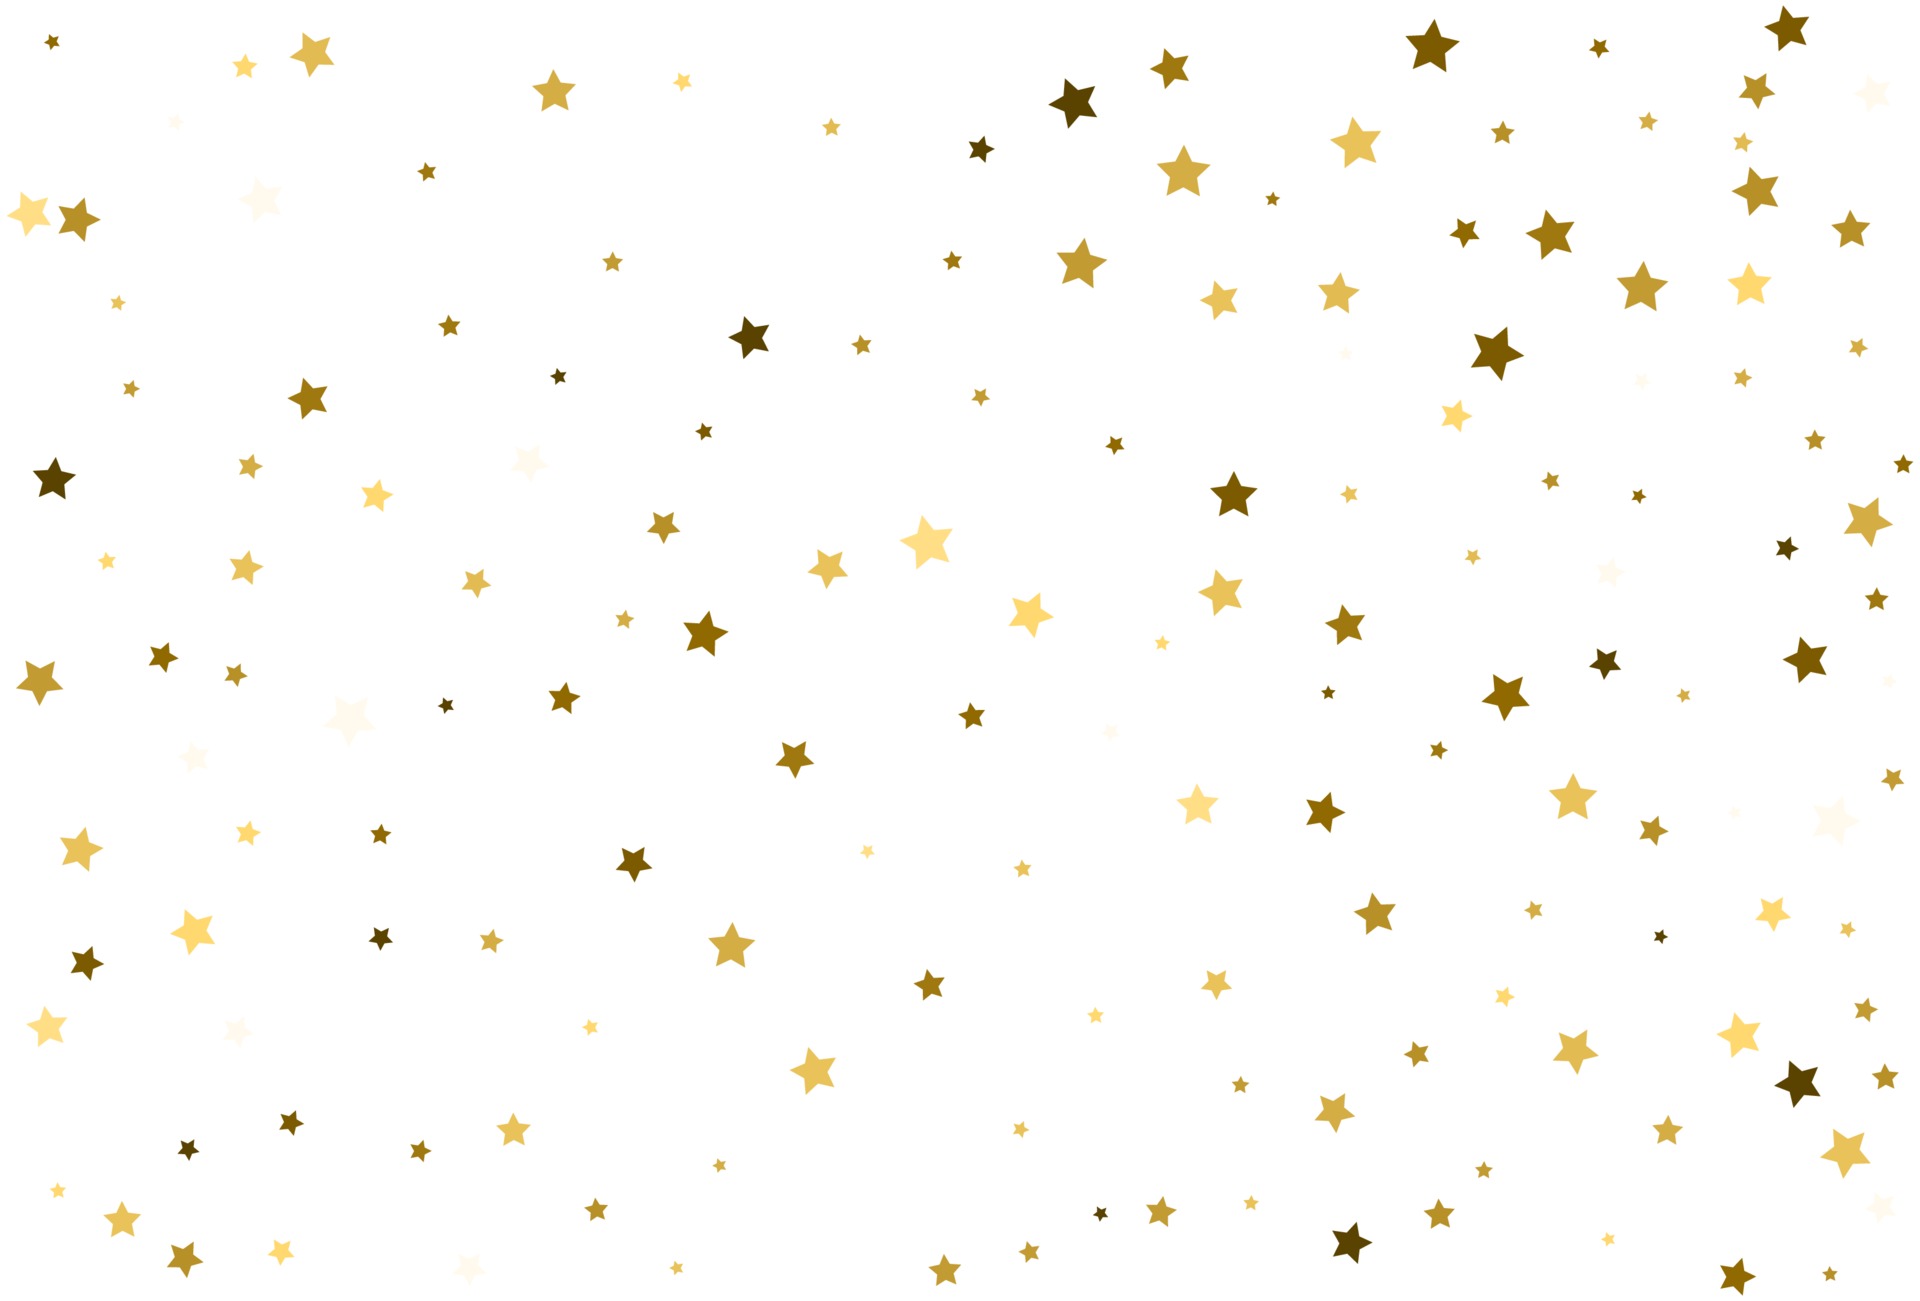 Uitrusting Tweet kan zijn Falling golden stars Gold Confetti celebration 3142699 Vector Art at  Vecteezy